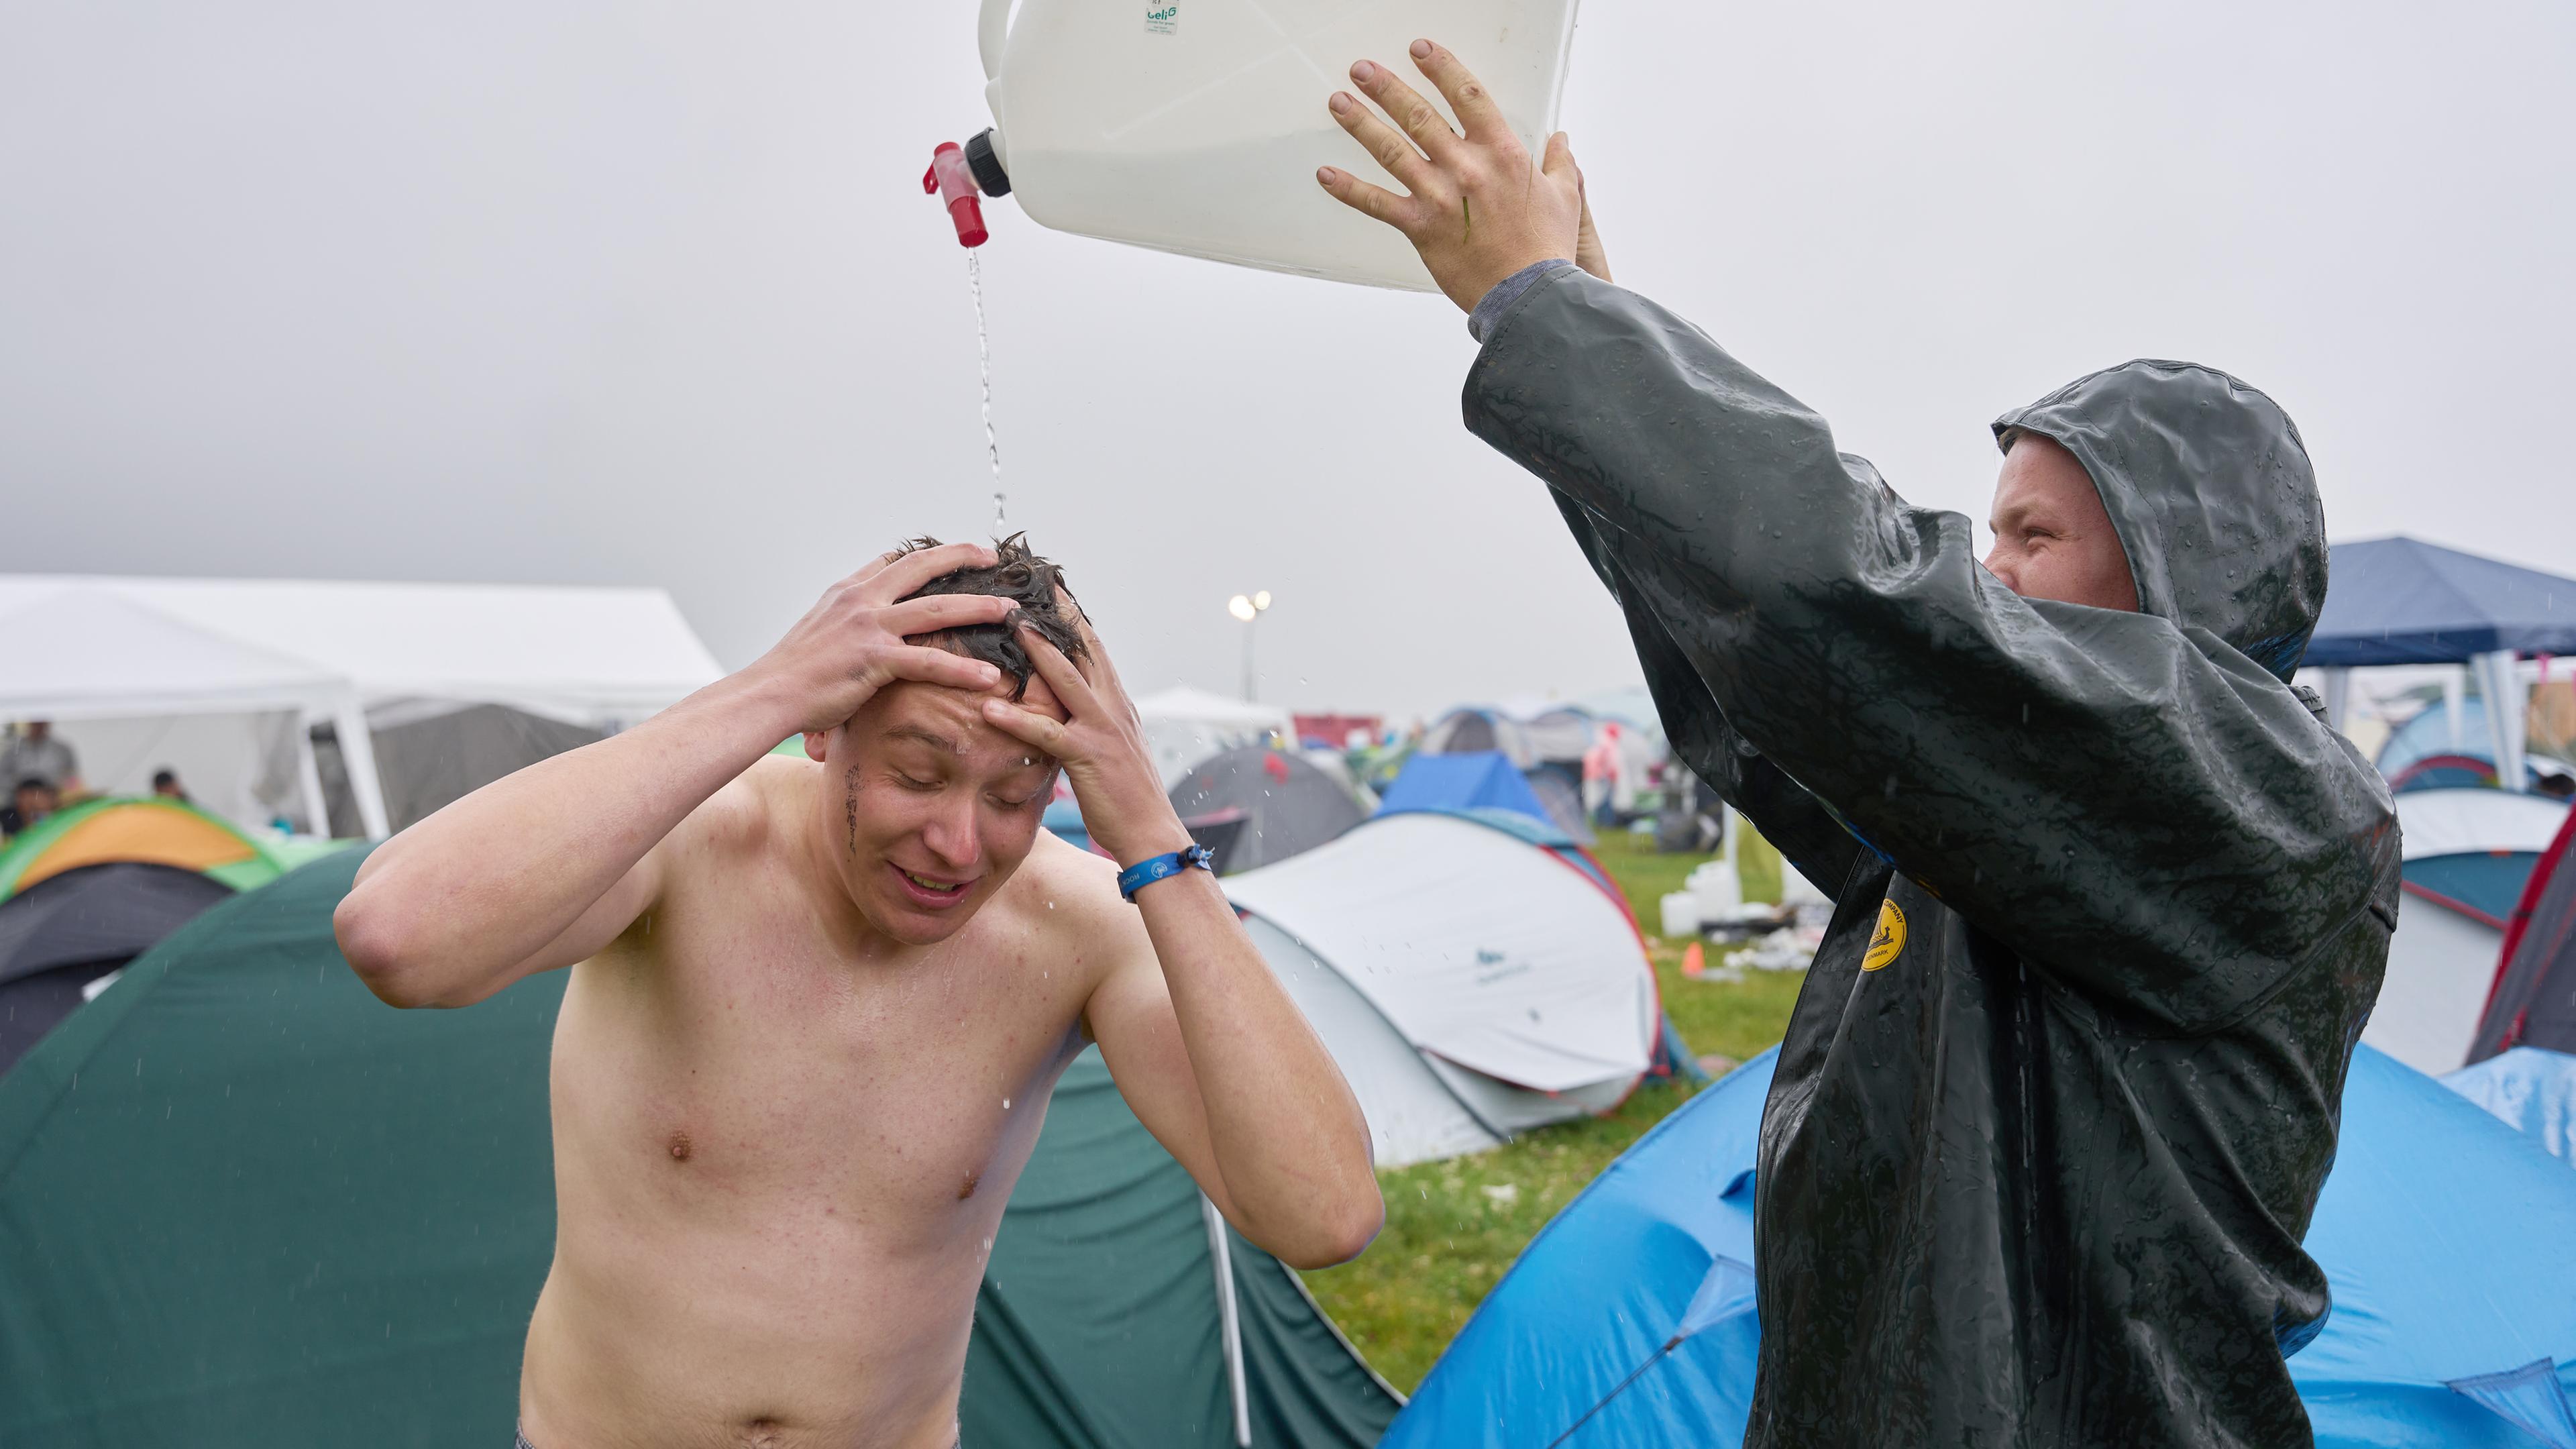 Rheinland-Pfalz, Nürburg: Thomas aus dem Sauerland duscht auf dem Camping gelände des Festivals "Rock am Ring". trotz Regens unter einem Wasserkanister. 